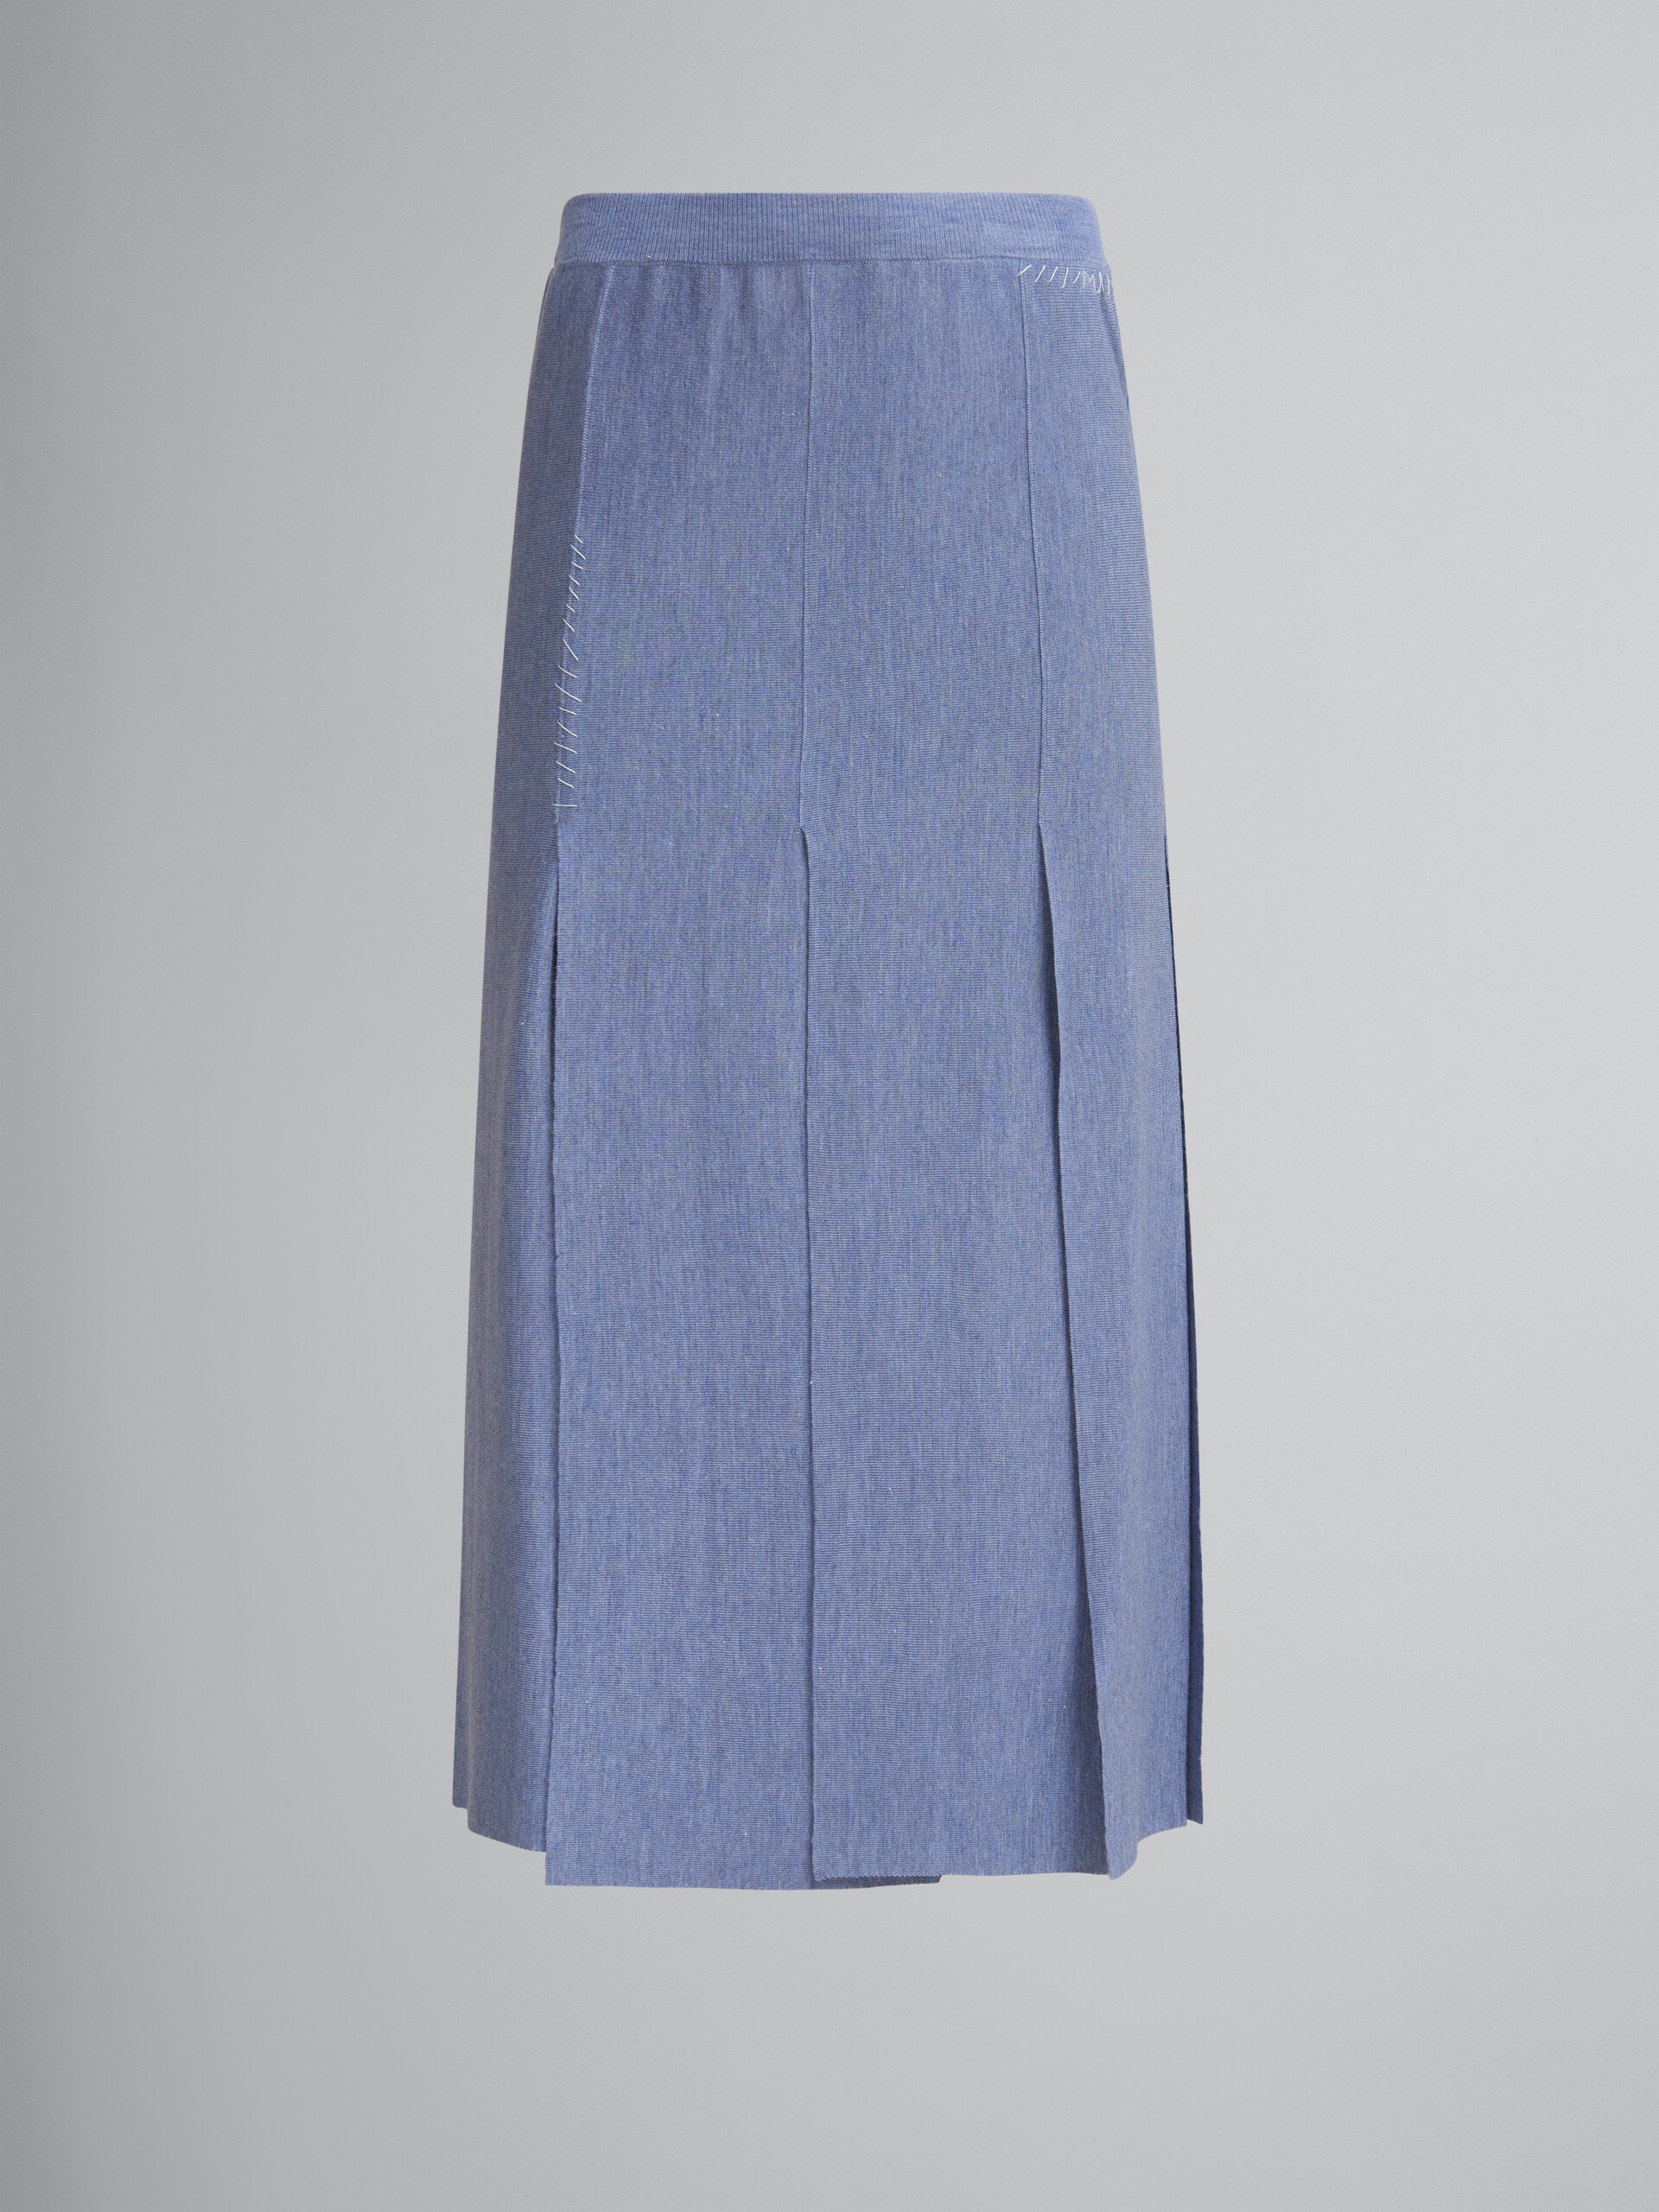 Blauer Rock aus Wolle und Seide mit unversäumten Schlitzen - Röcke - Image 1